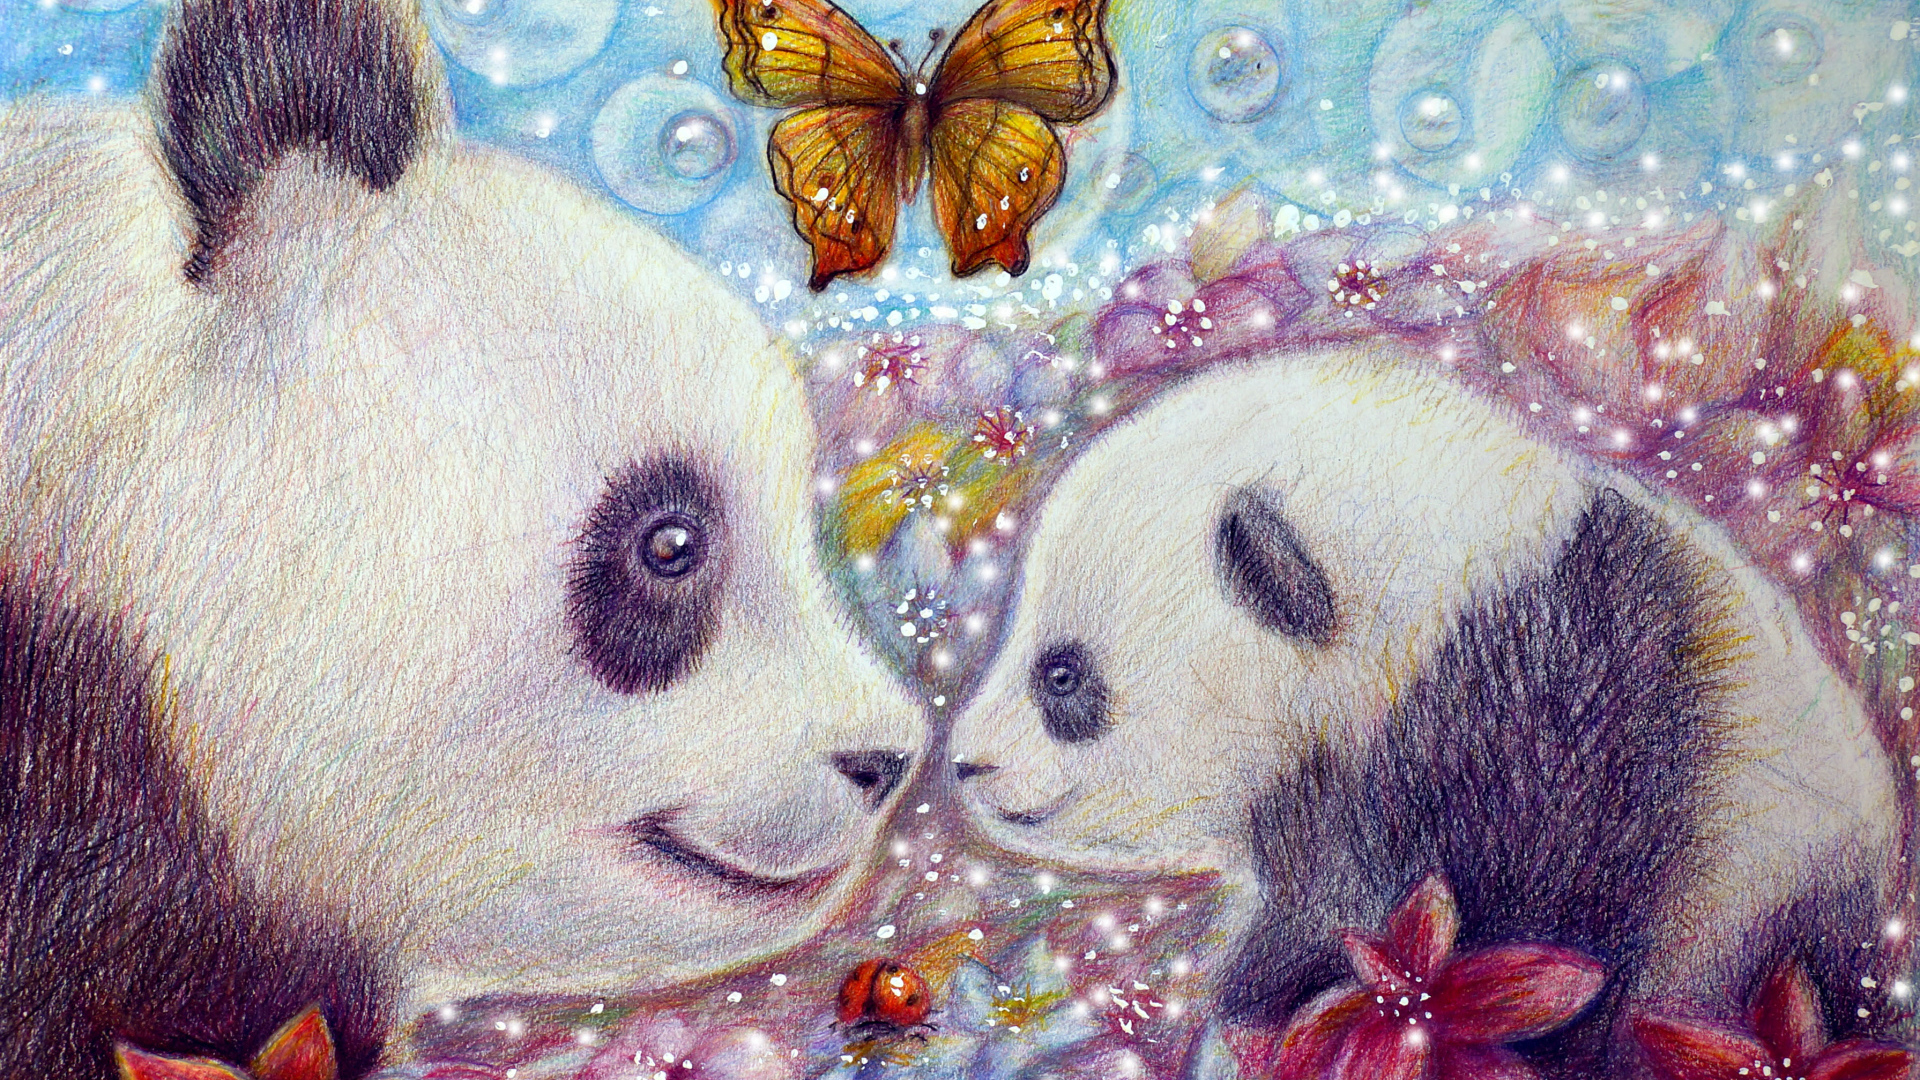 Большая медведица панда с маленьким медвежонком и бабочками